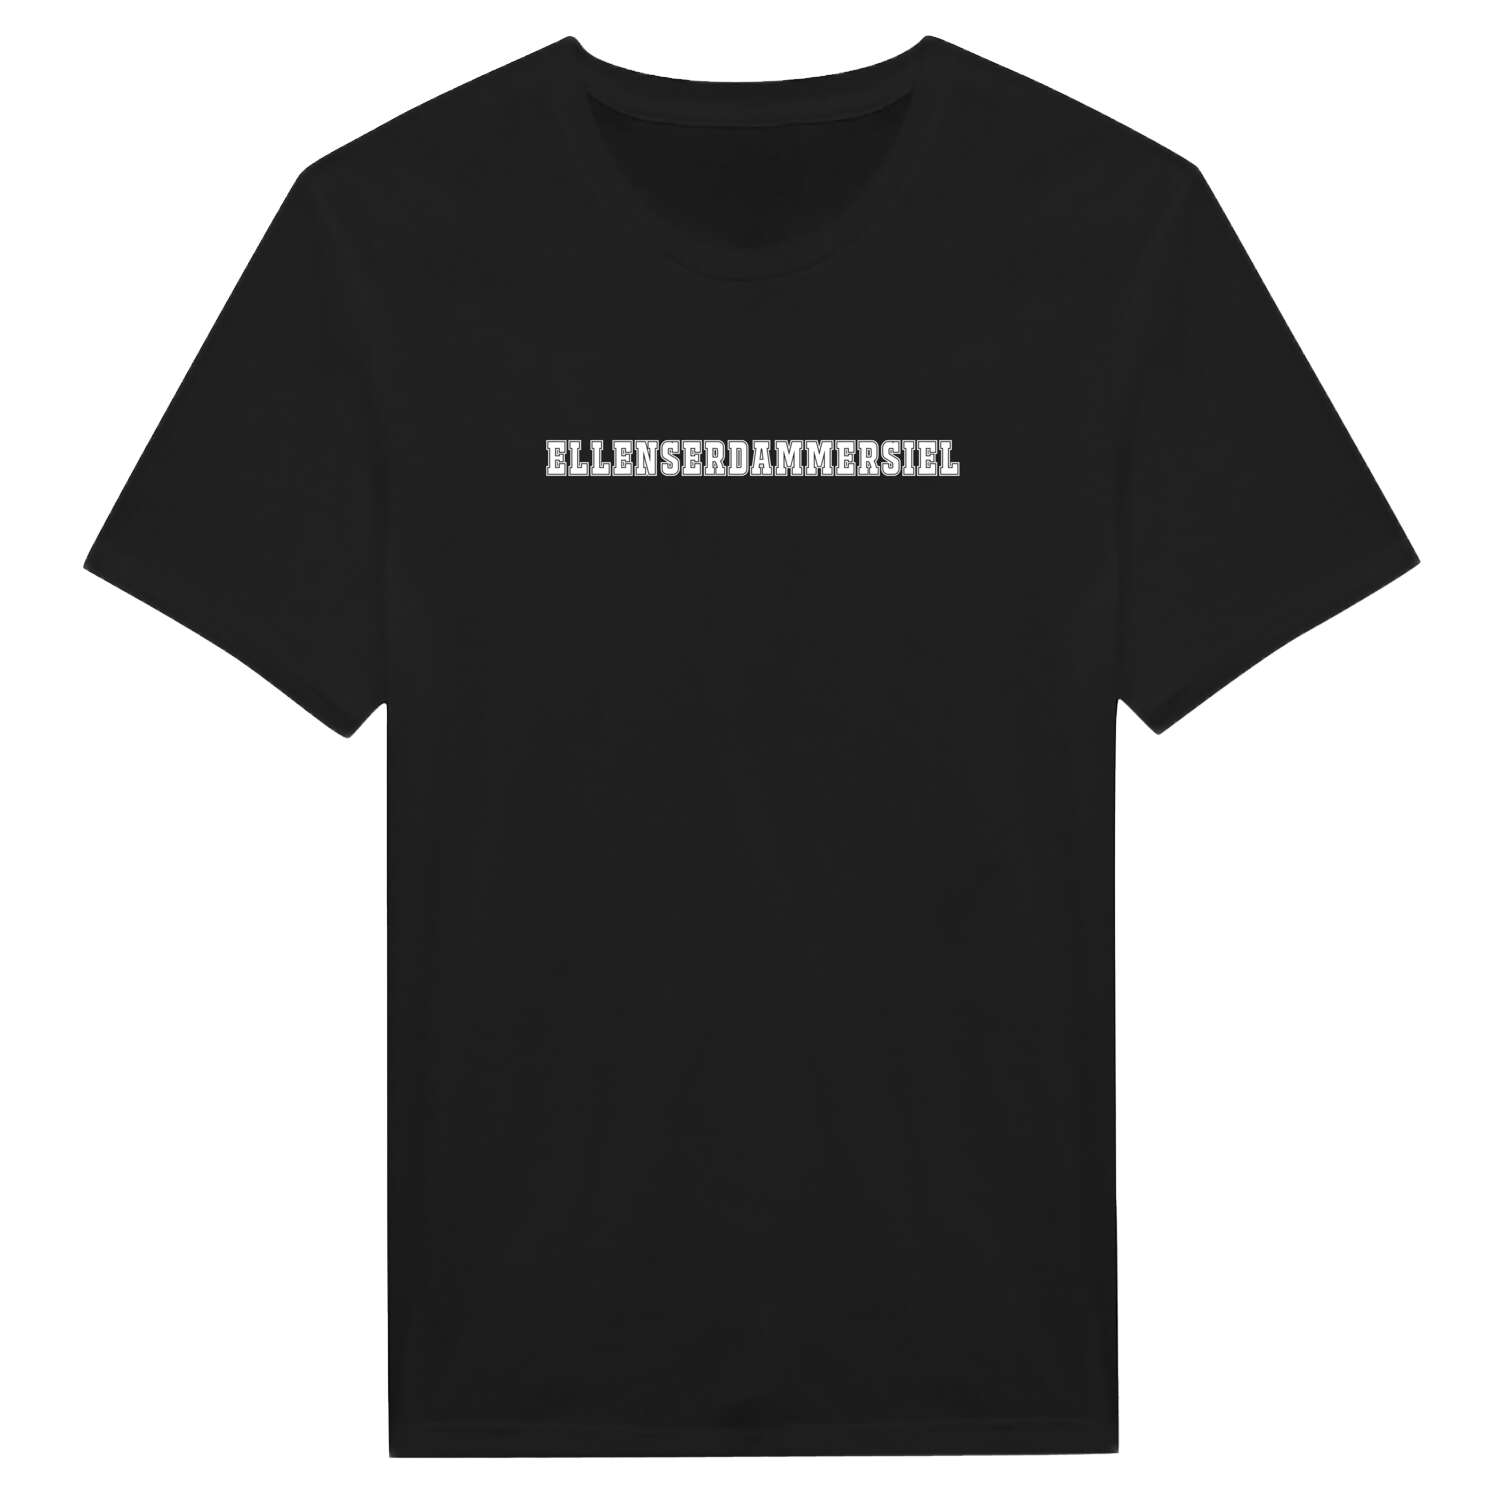 Ellenserdammersiel T-Shirt »Classic«